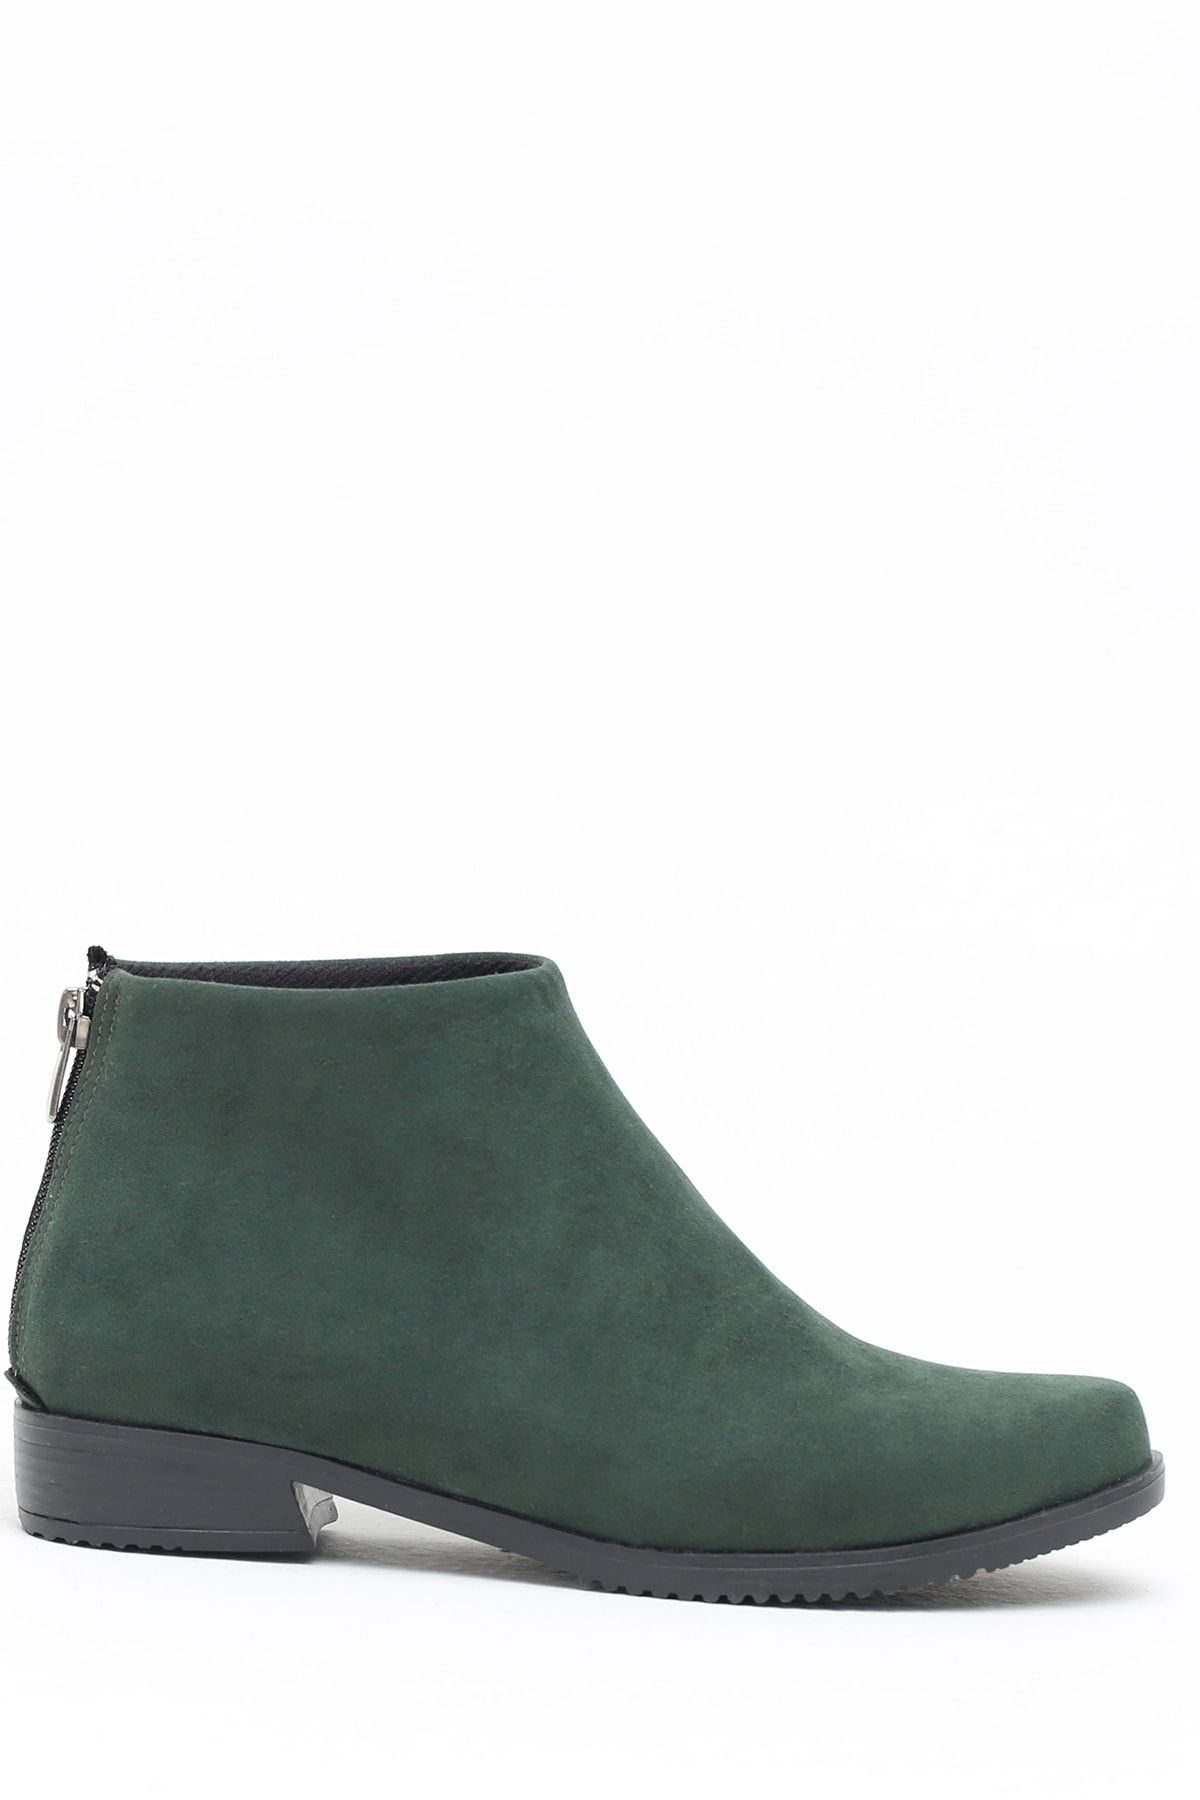 Ayakkabı Modası Yeşil Kadın Bot 5001-19-116001